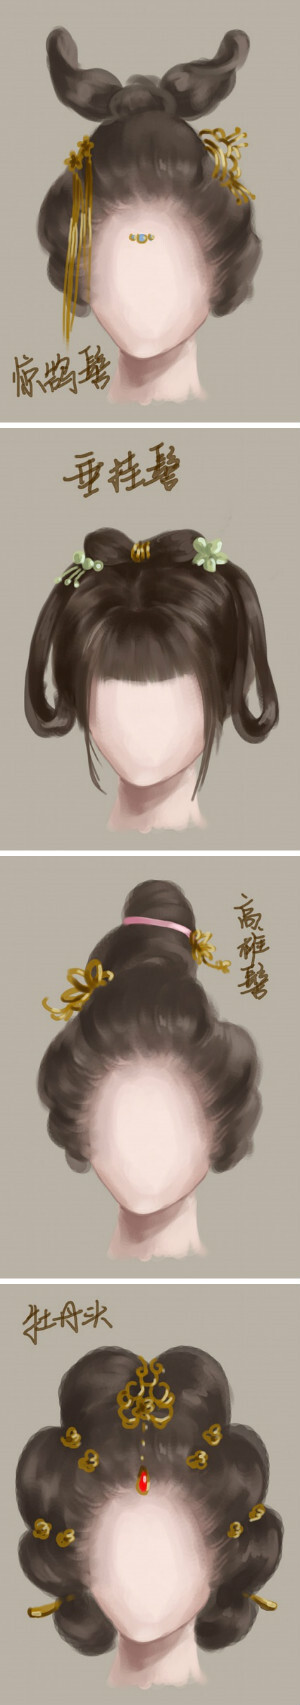 中国古代女子发型图解.在古代,你想梳什么发型呢?